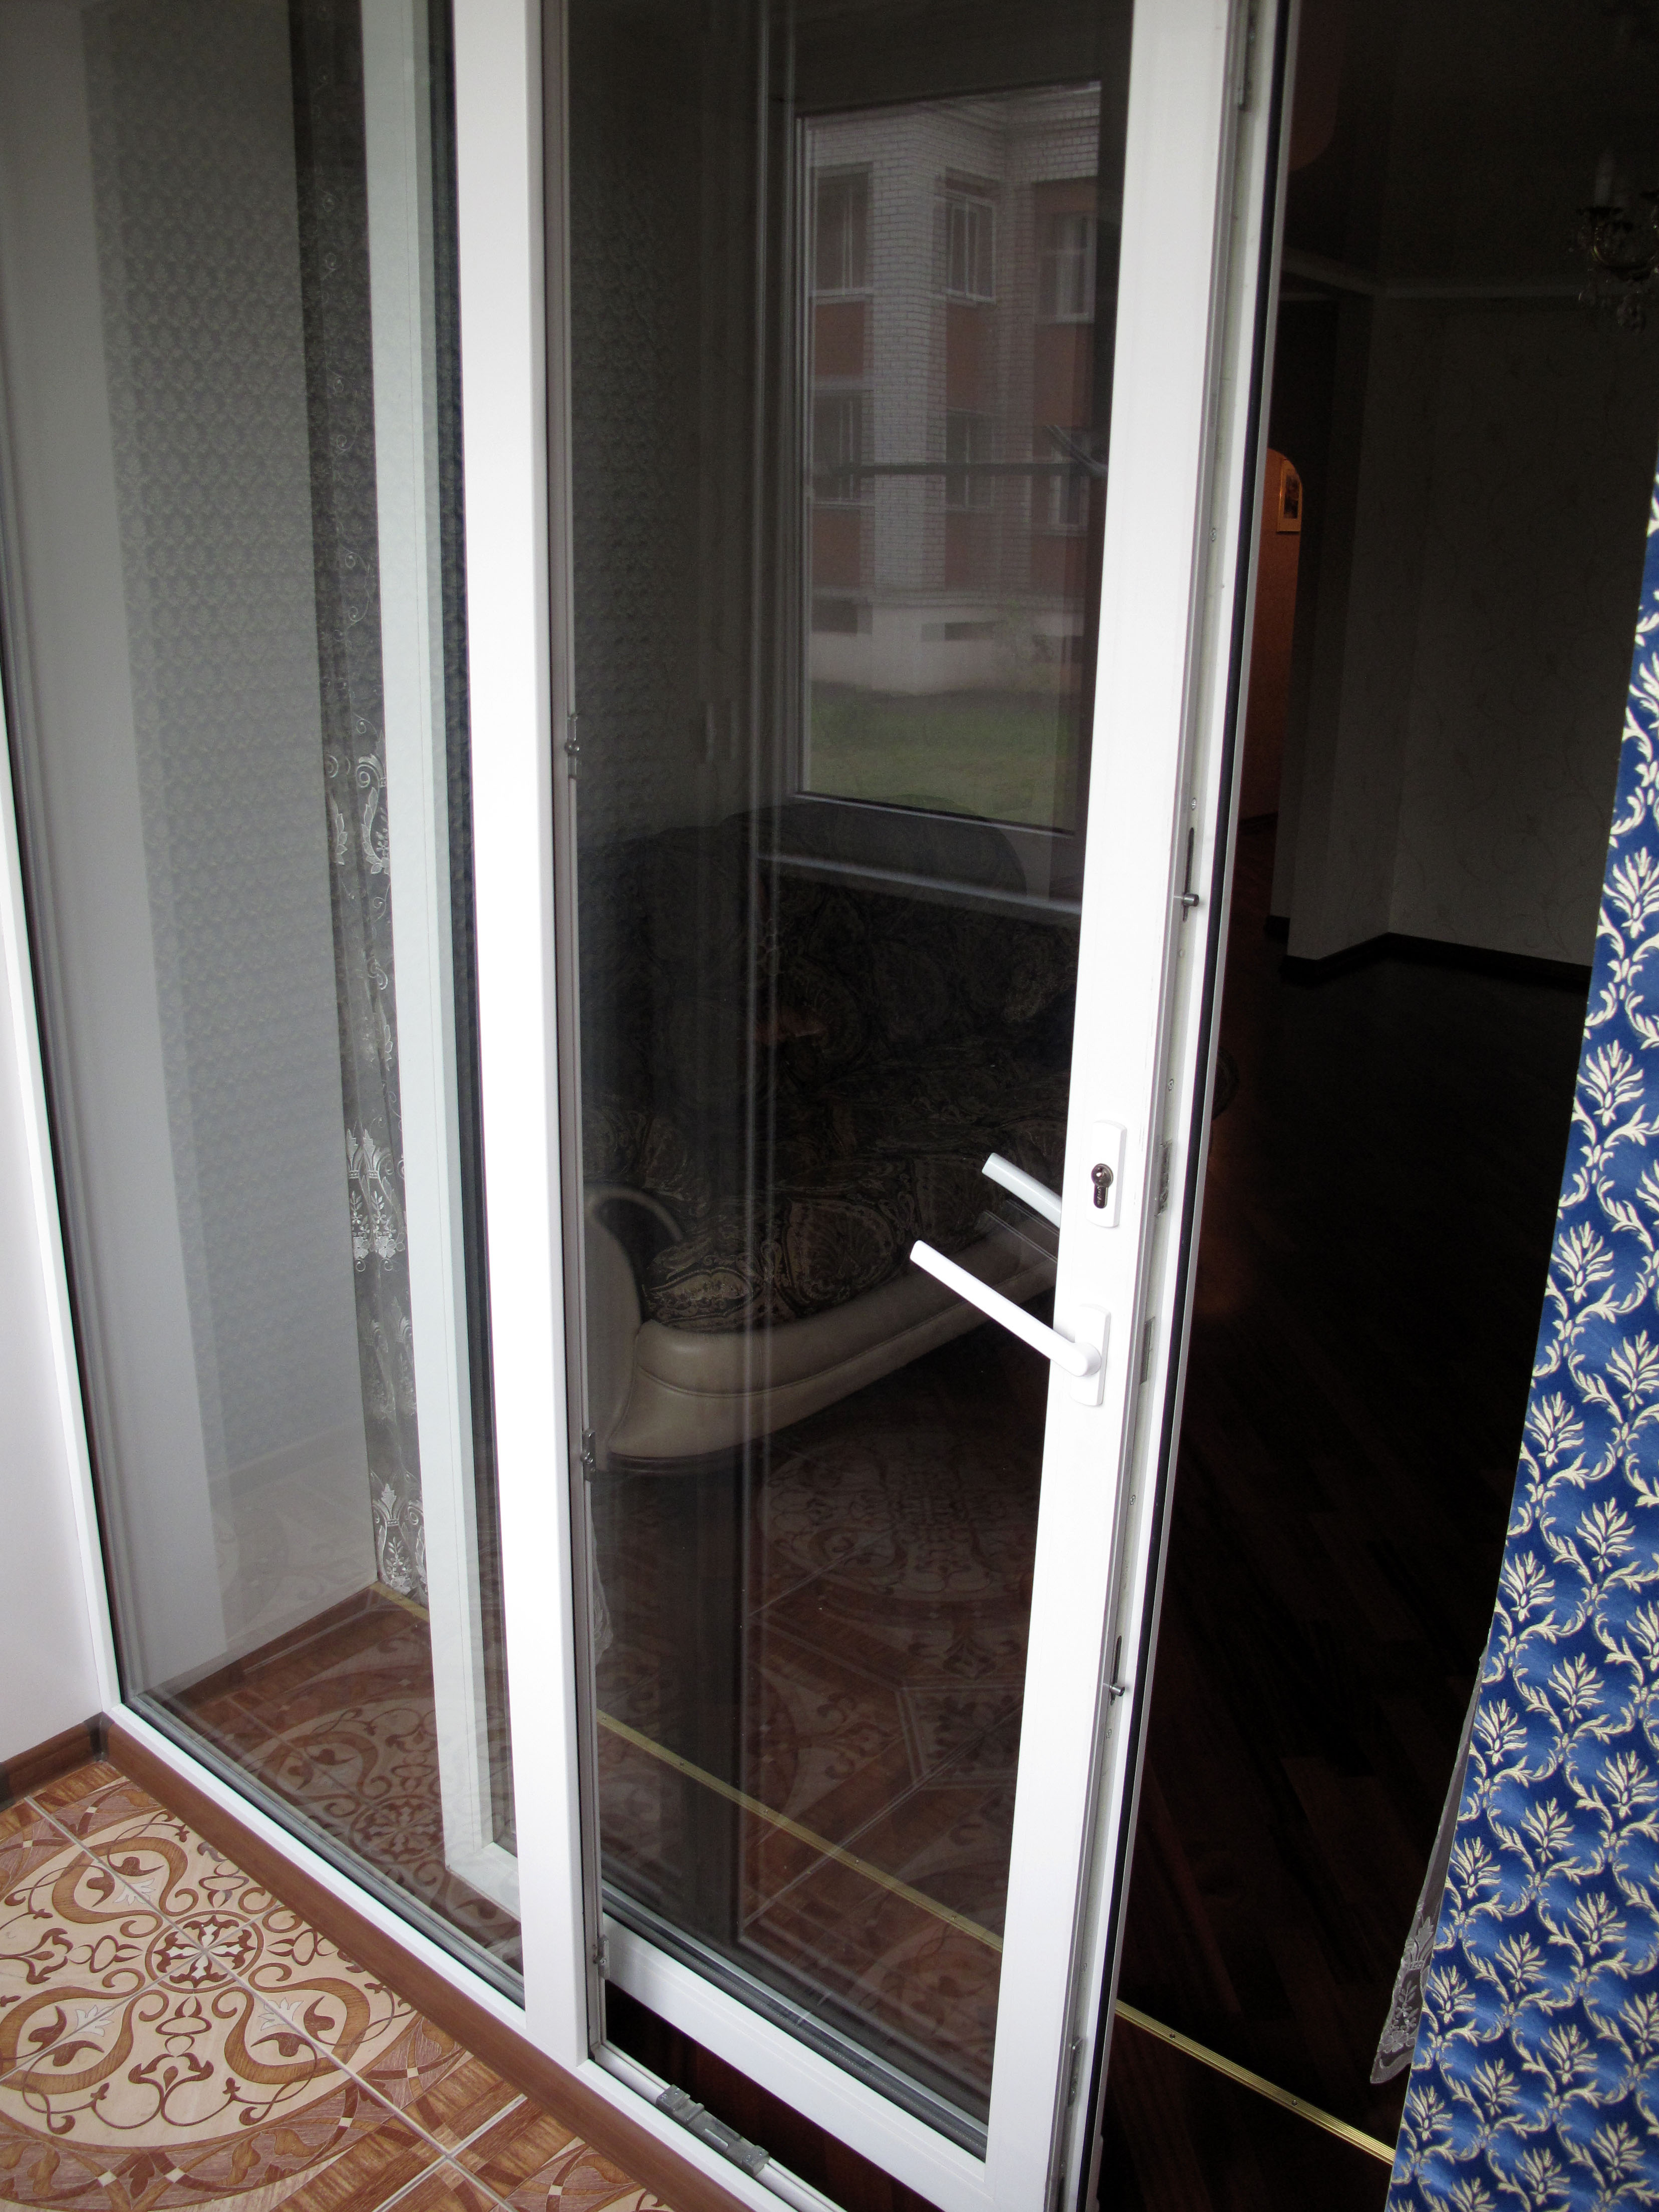 Примеры застекления балконов и лоджий окнами Slidors